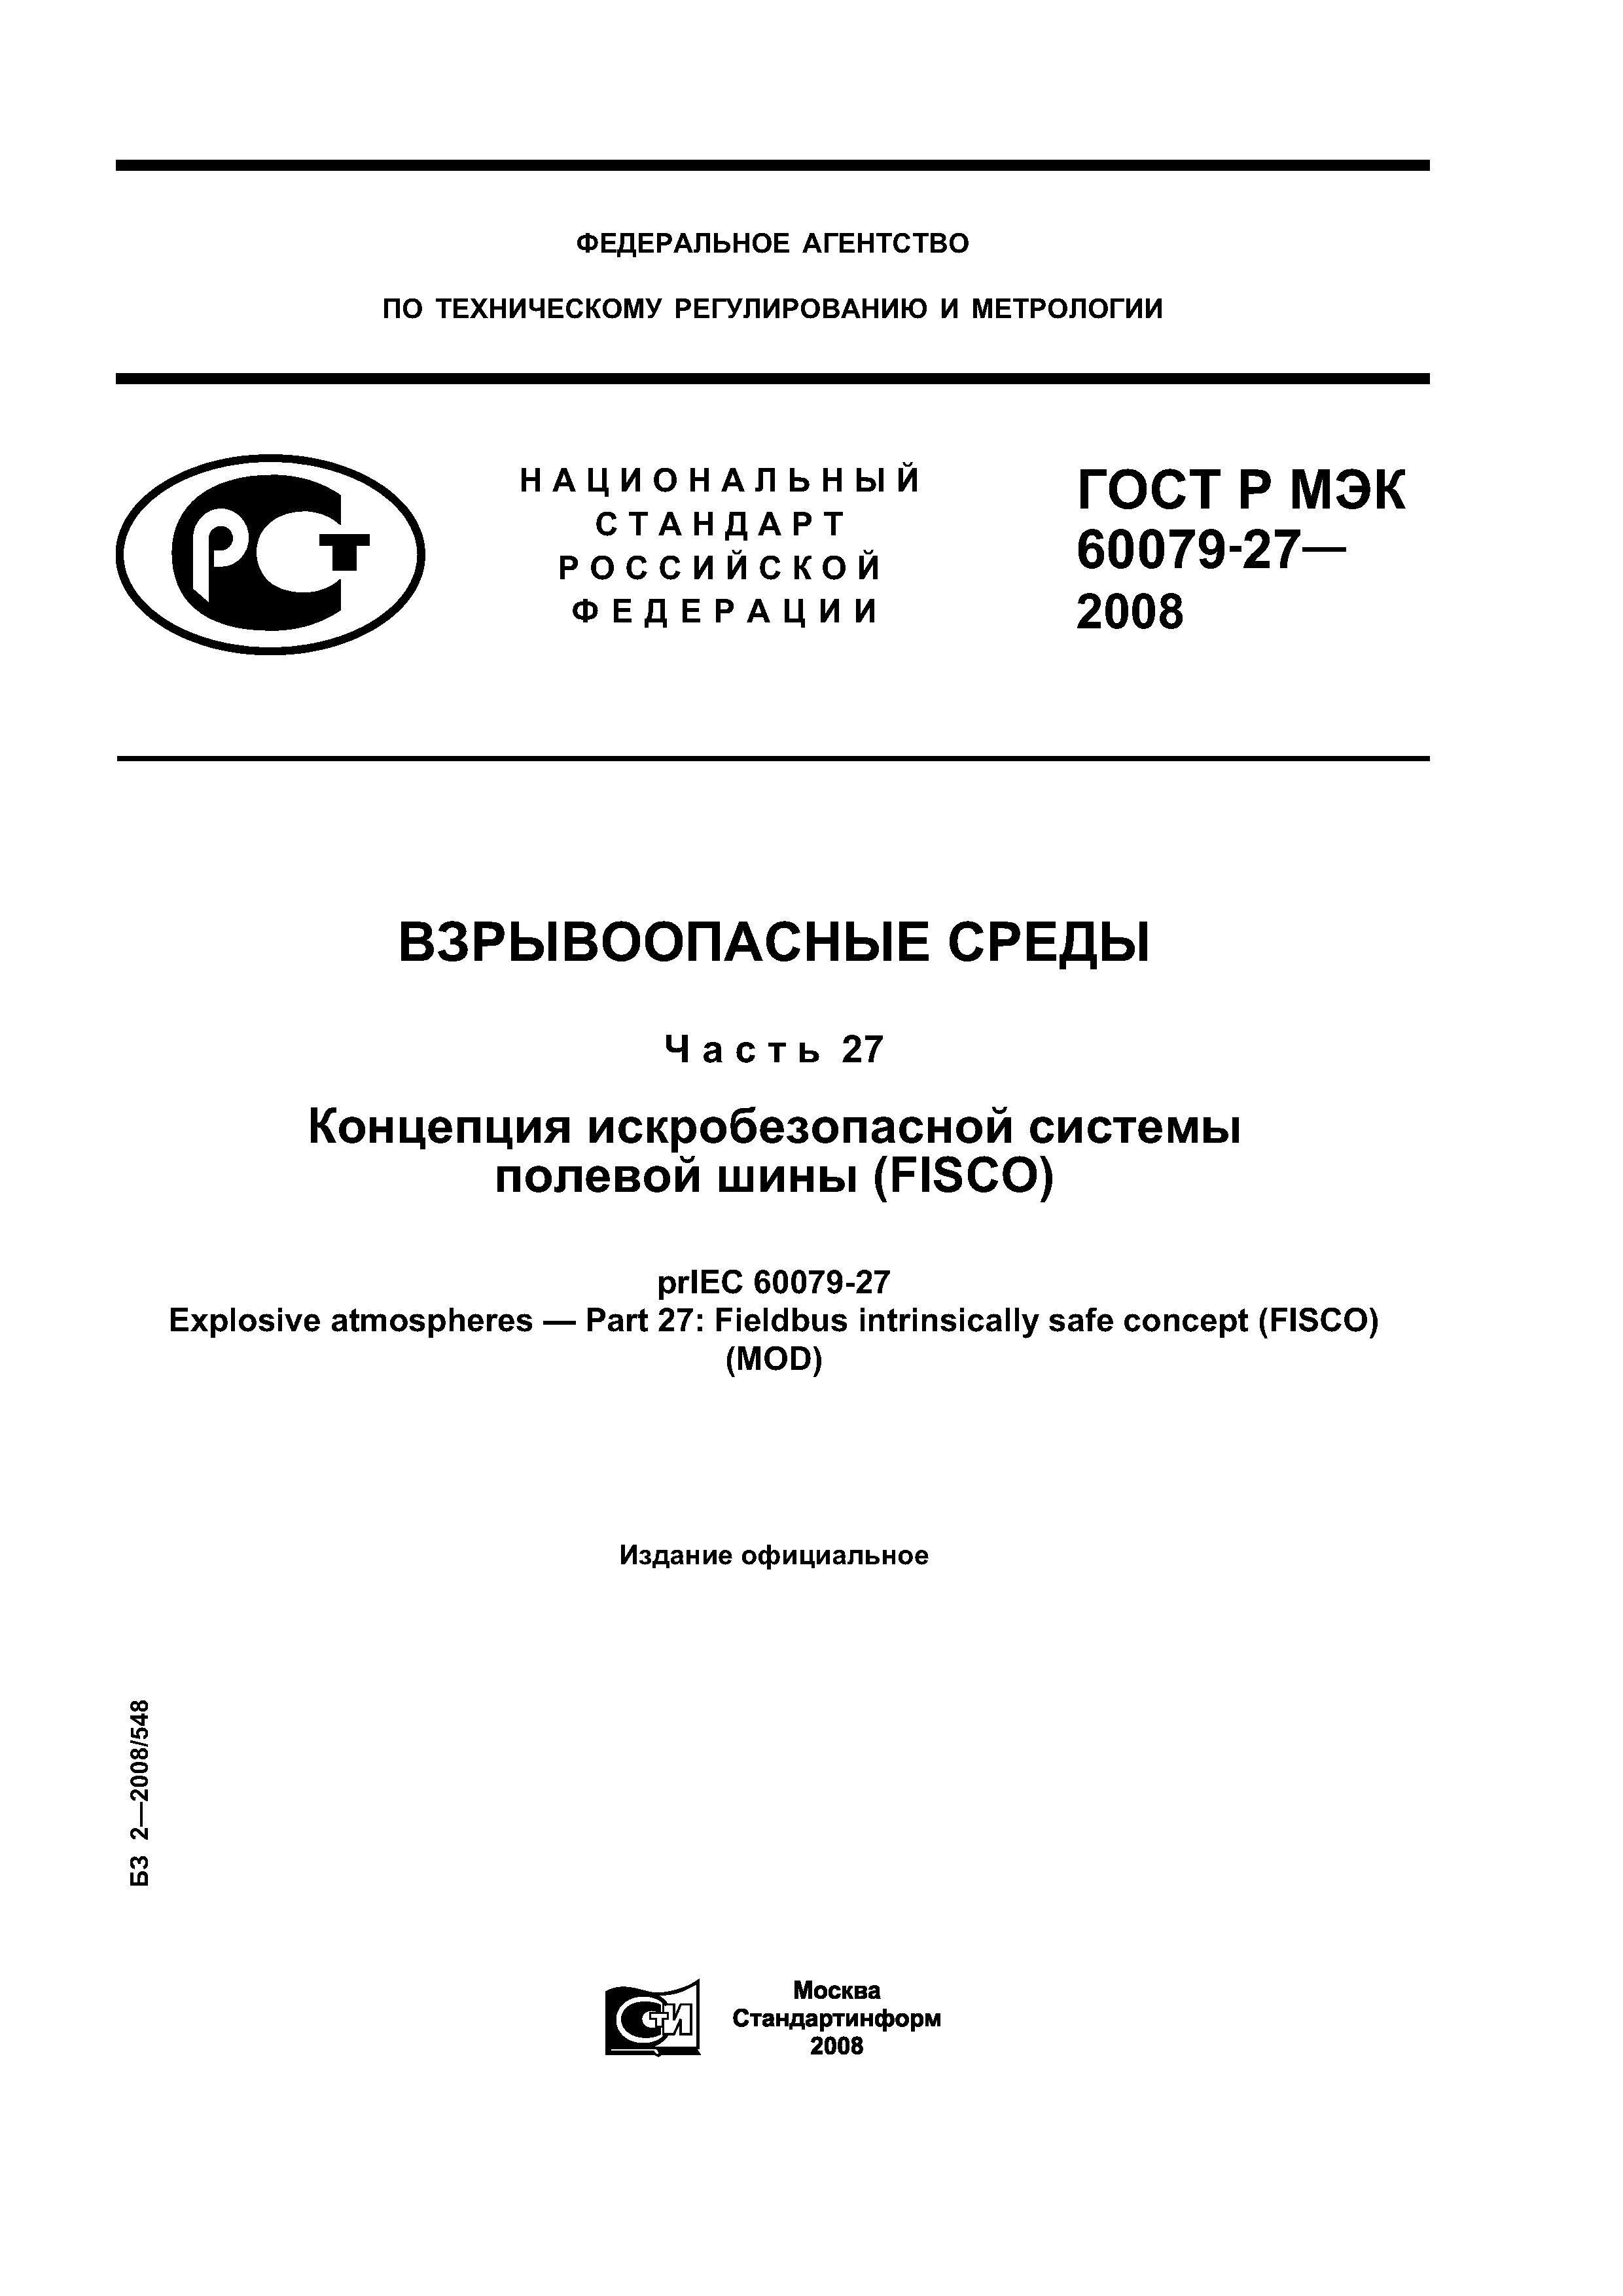 ГОСТ Р МЭК 60079-27-2008